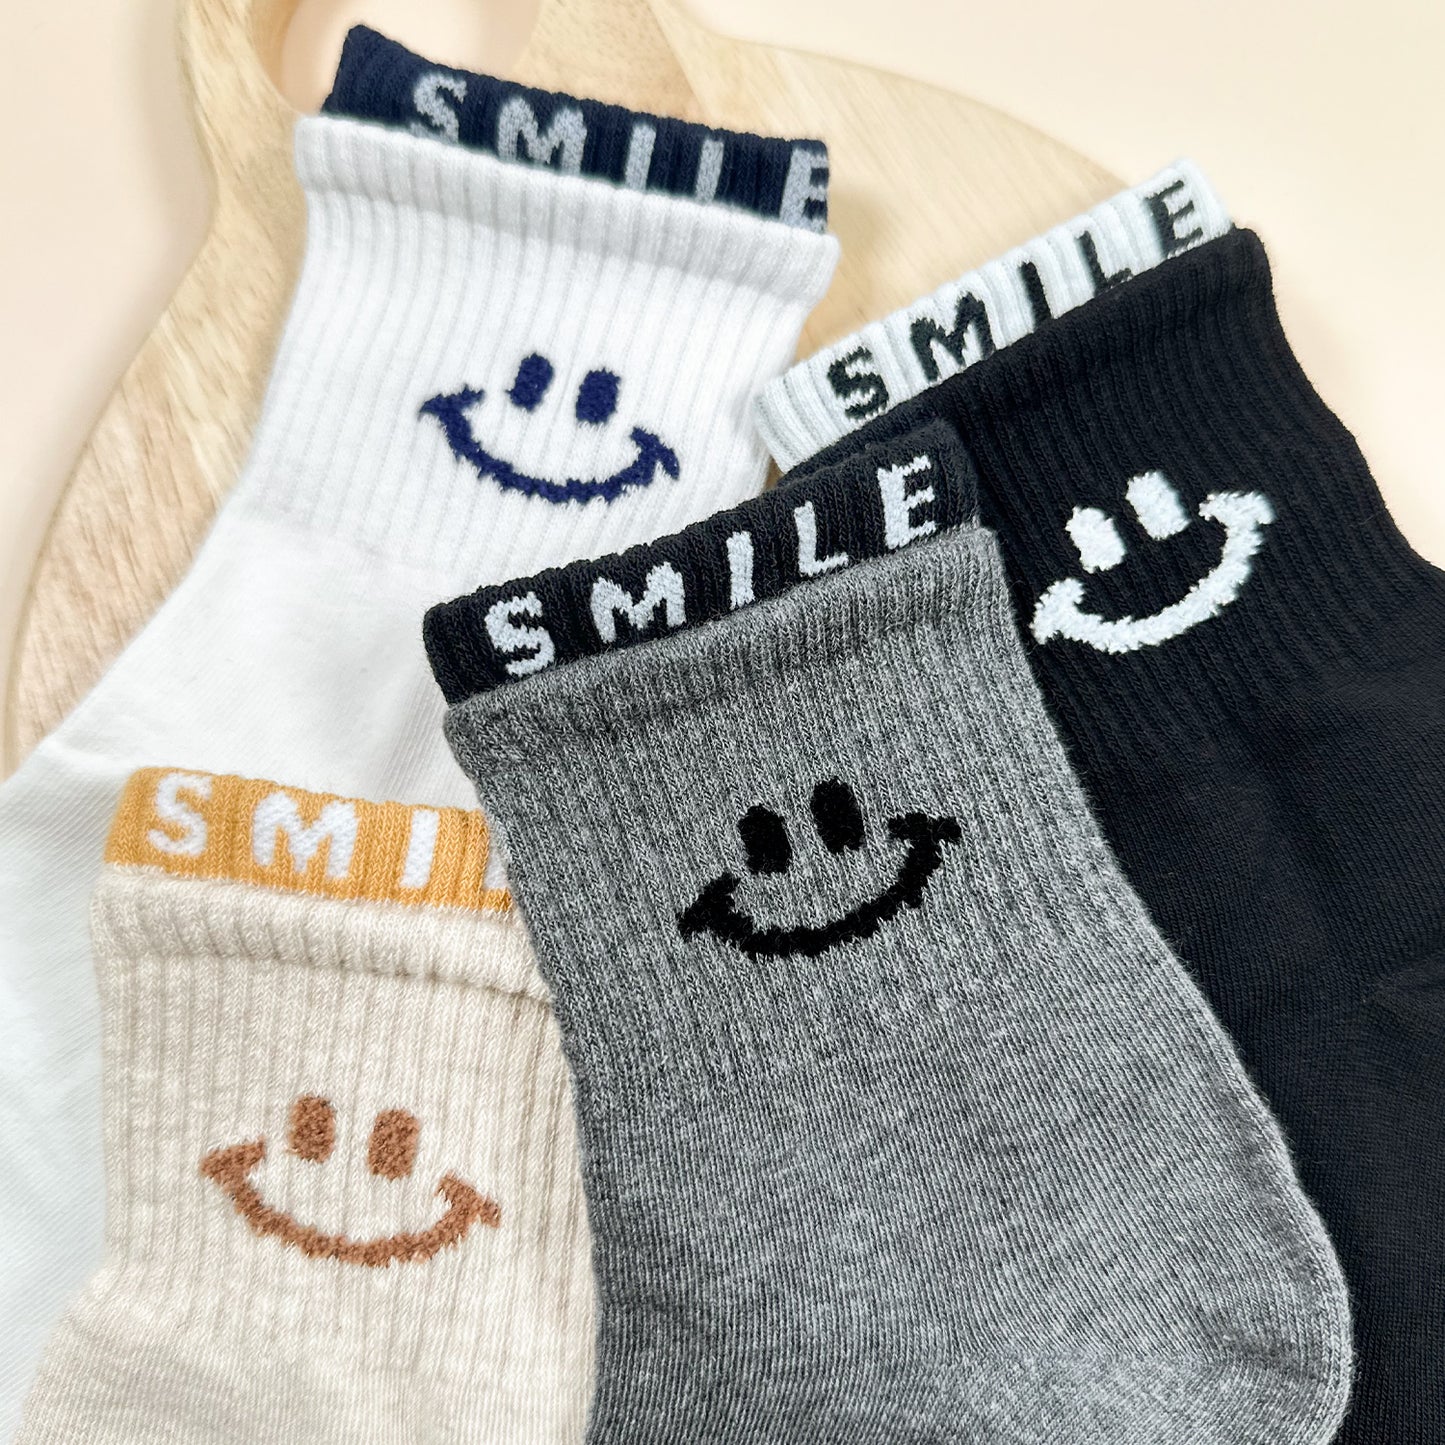 Women's Crew Long Cutie Smile Socks